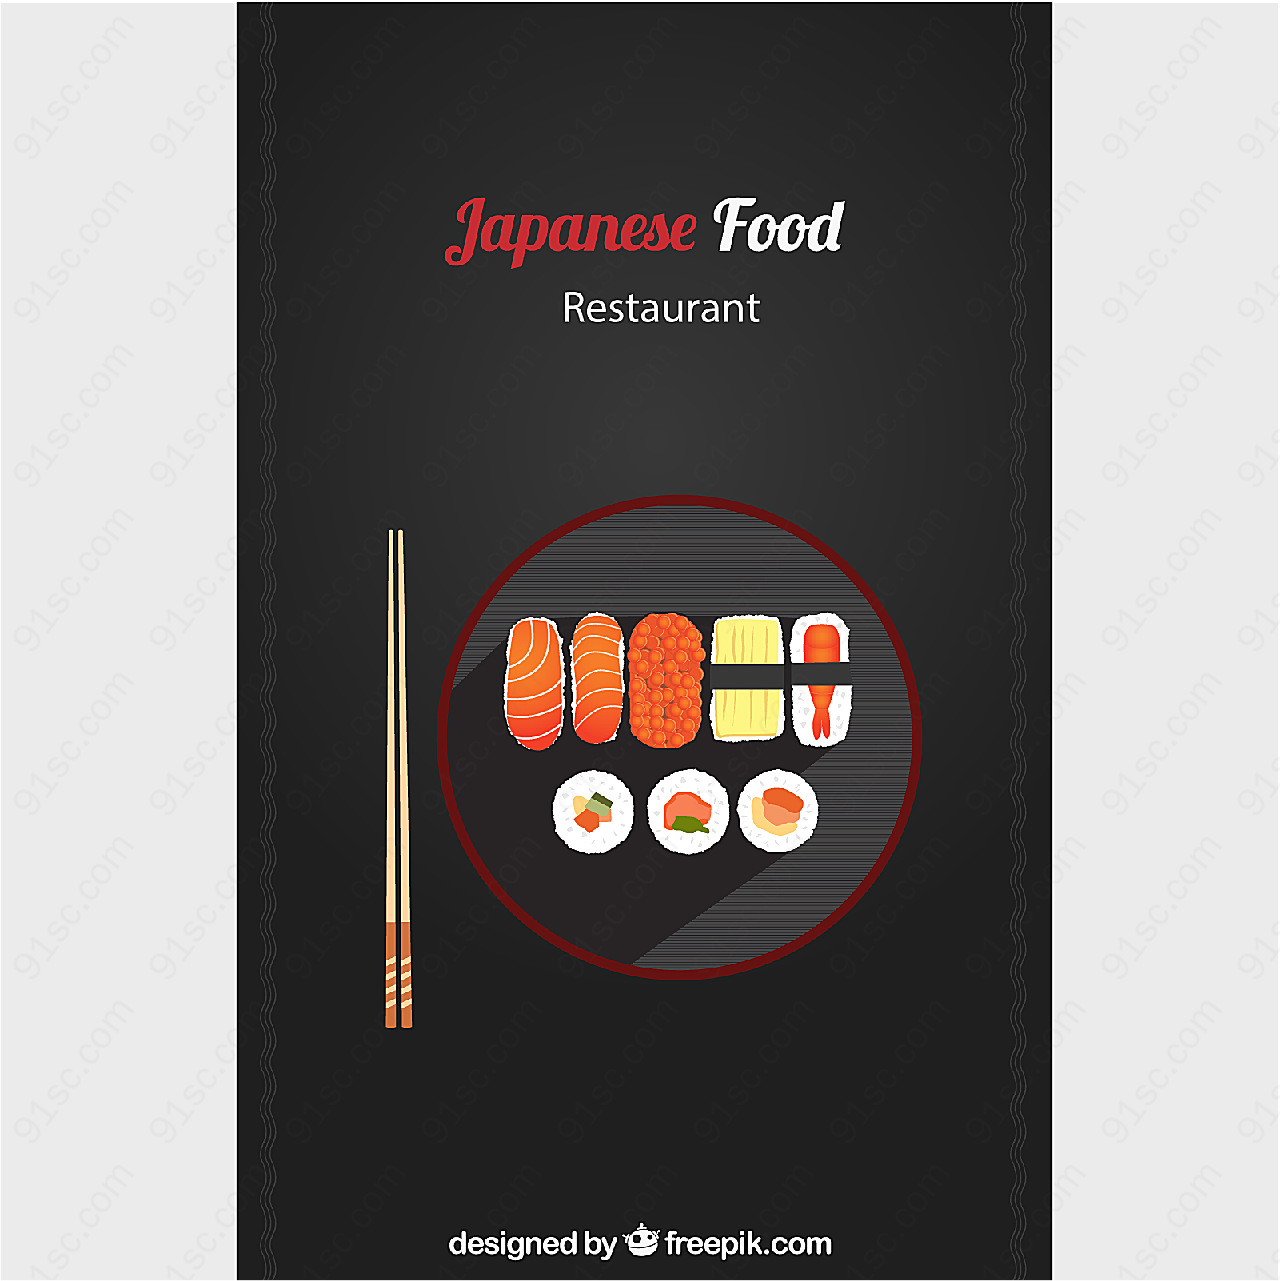 日式料理寿司菜单平面广告